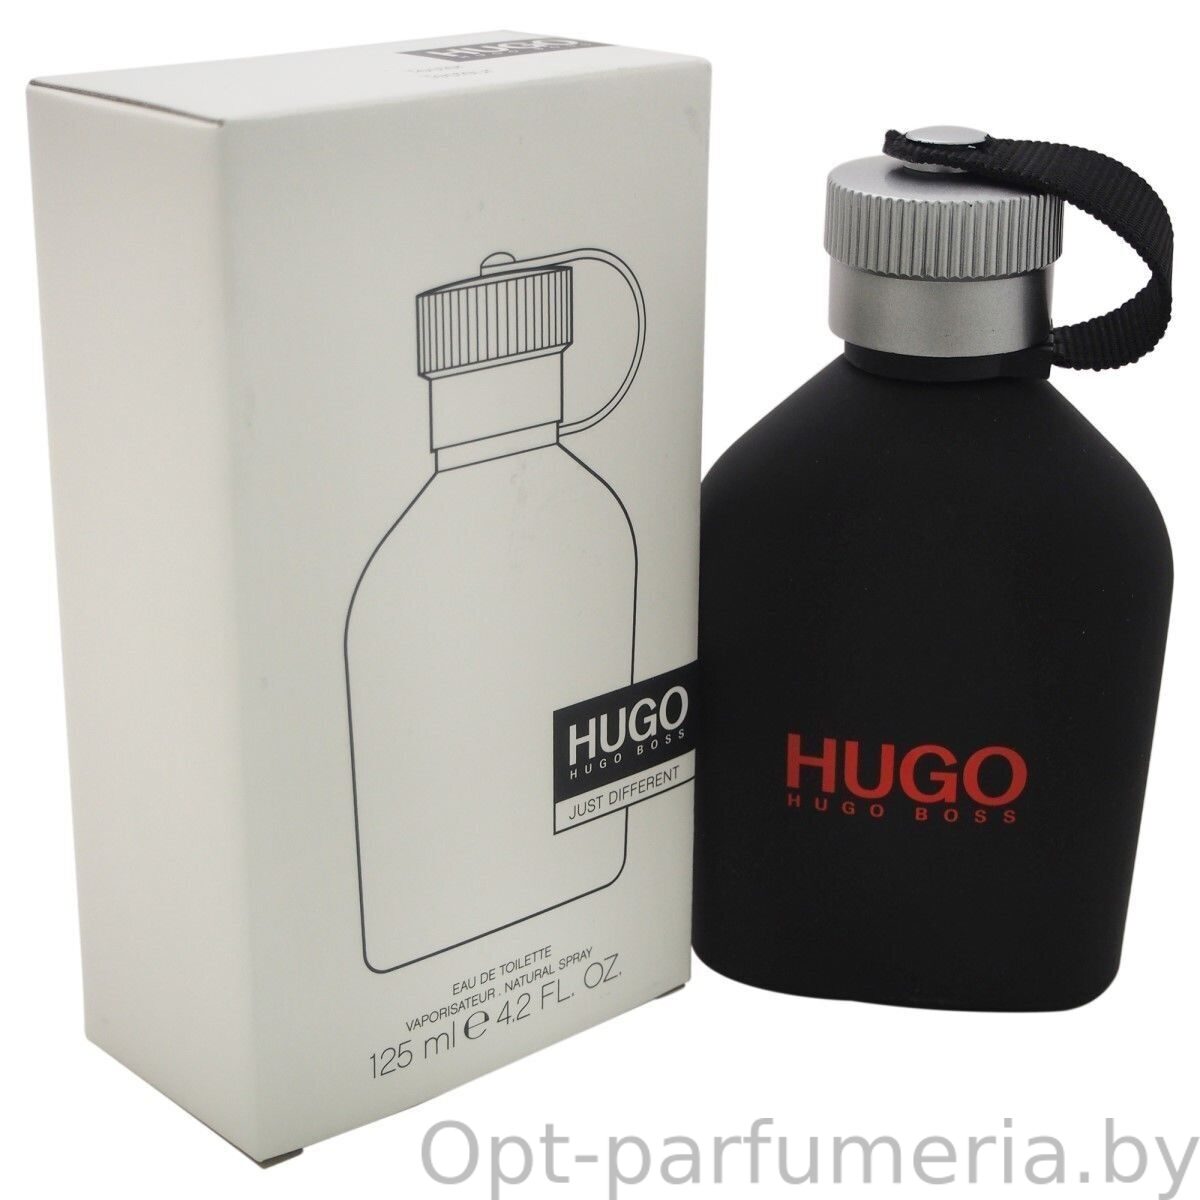 Hugo different. Hugo Boss just different 125 мл. Hugo Boss men 125ml EDT. Hugo Boss Iced EDT men 125ml Tester. Hugo Boss Hugo man EDT 125ml.